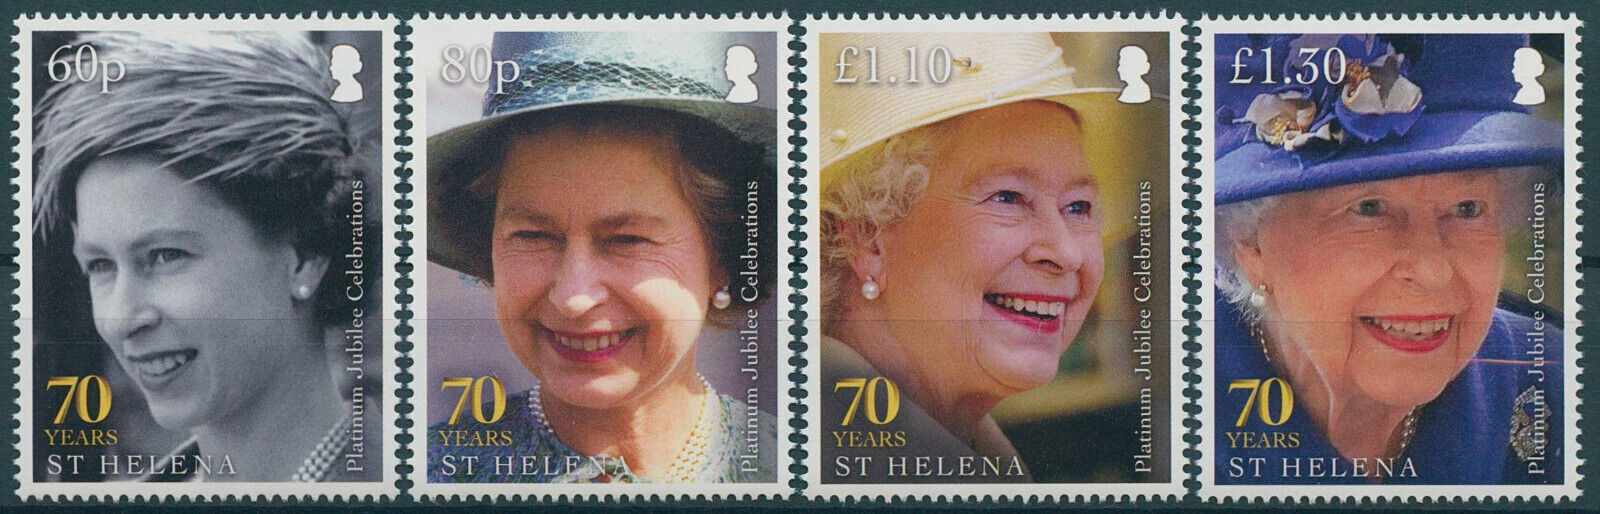 St Helena 2022 MNH Royalty Stamps Queen Elizabeth II Platinum Jubilee 4v Set